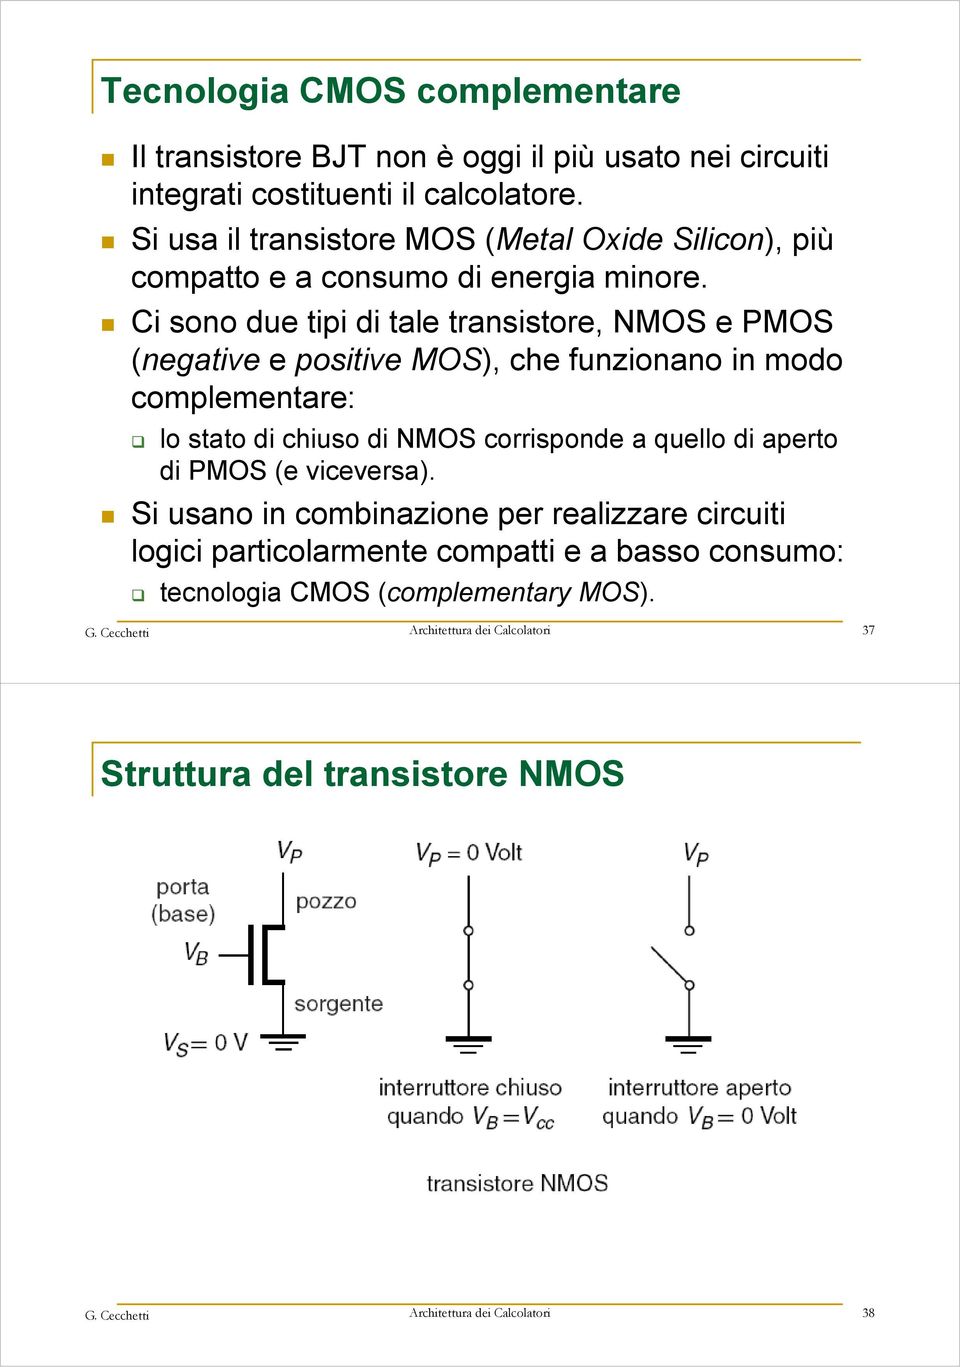 Ci sono due tipi di tale transistore, NMOS e PMOS (negative e positive MOS), che funzionano in modo complementare: lo stato di chiuso di NMOS